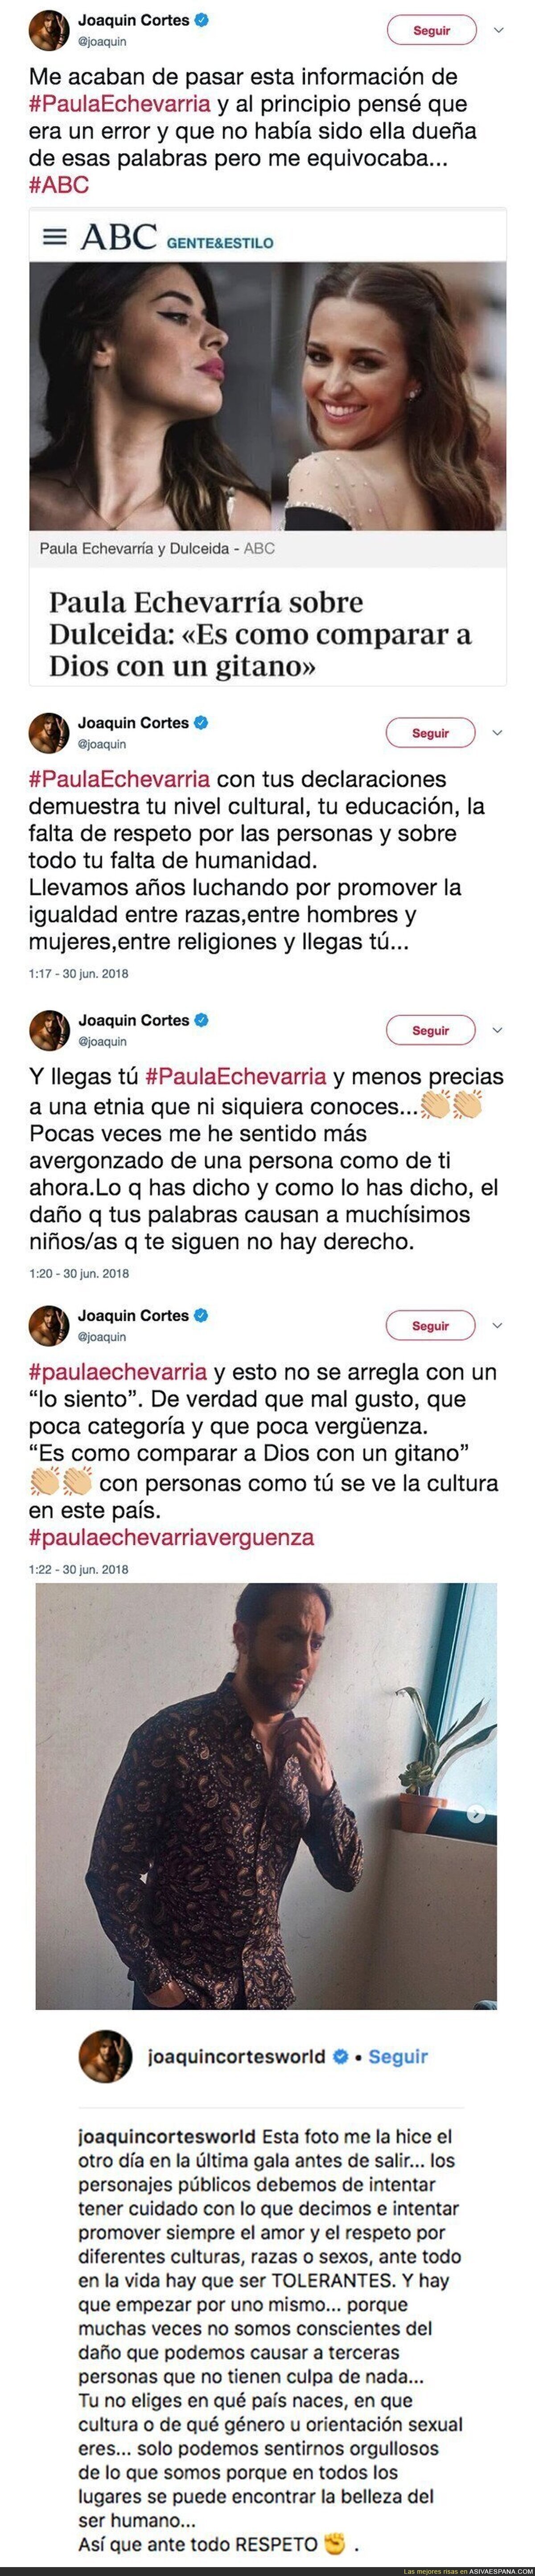 Joaquín Cortes se indigna Paula Echevarría por un comentario sobre los gitanos